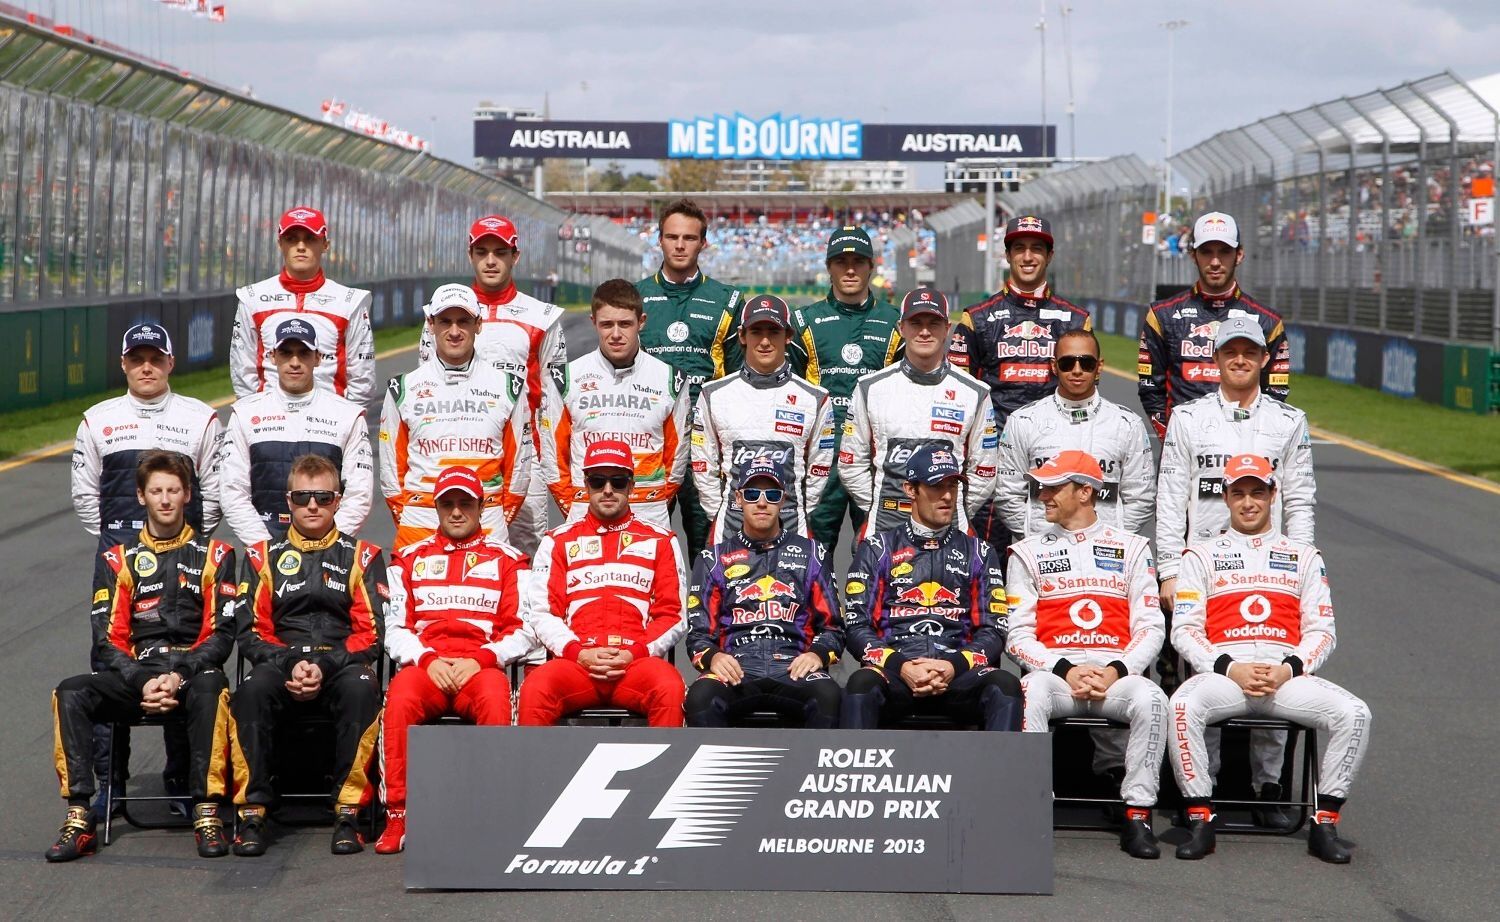 Formule 1, VC Austrálie 2013: společé tablo všech pilotů